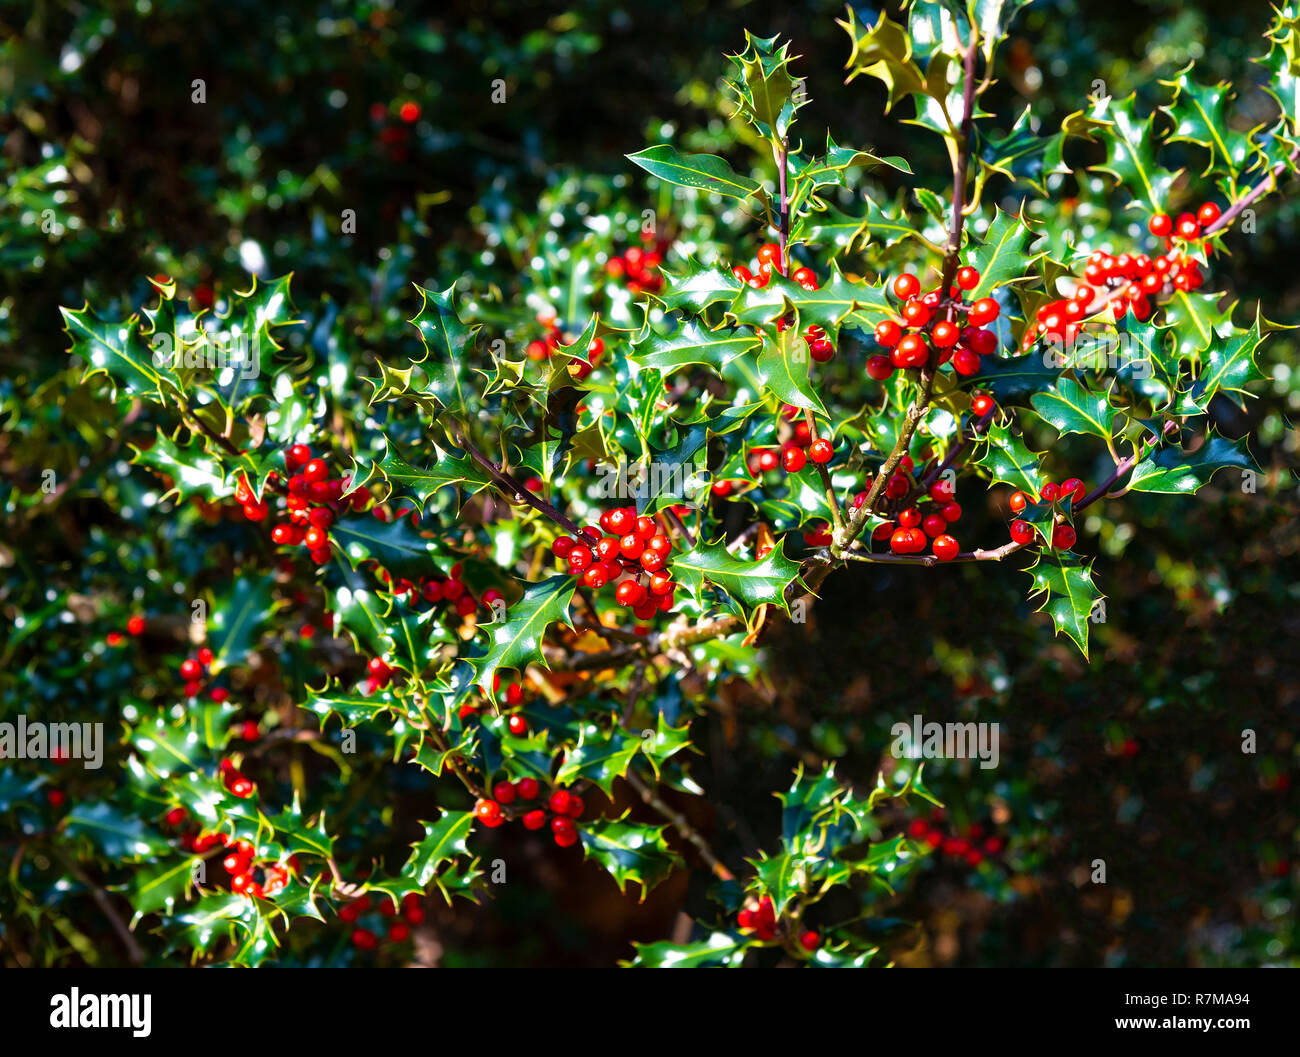 Un buisson de houx plein de petits fruits pour les oiseaux et de décorations de Noël prises dans le parc national New Forest, Hampshire, Royaume-Uni Banque D'Images